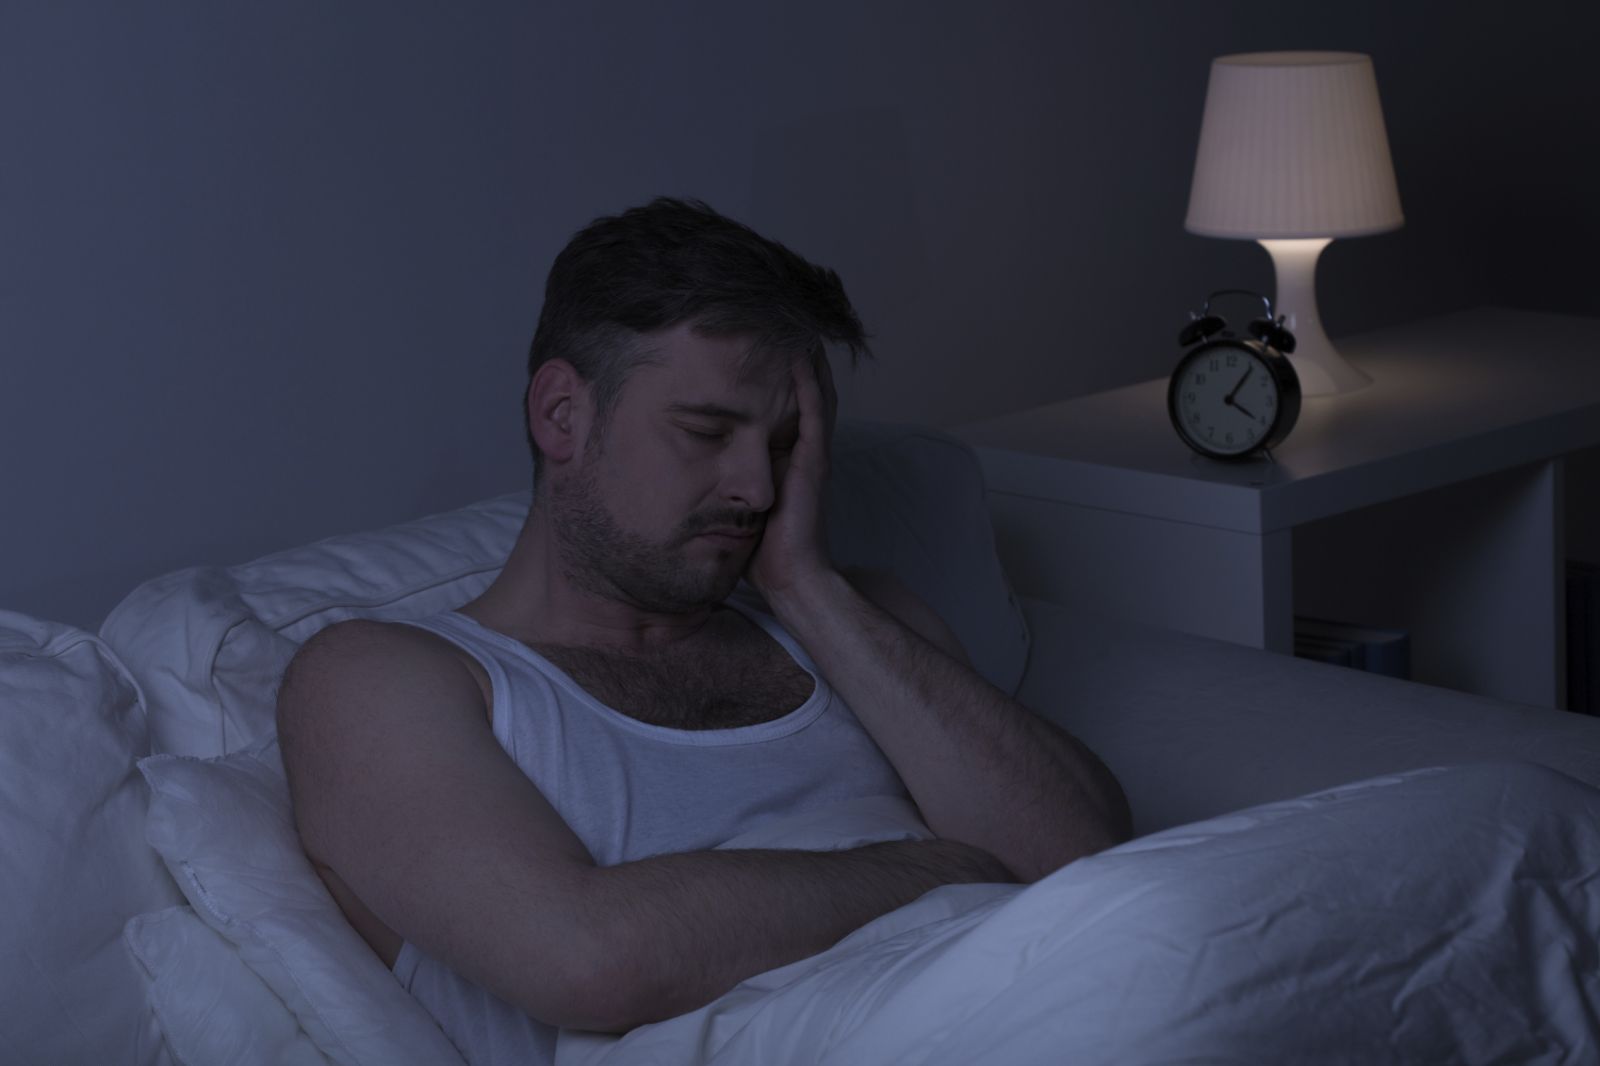 Uudholdelige rygsmerter om natten: Hvordan sover man? (9 tips)